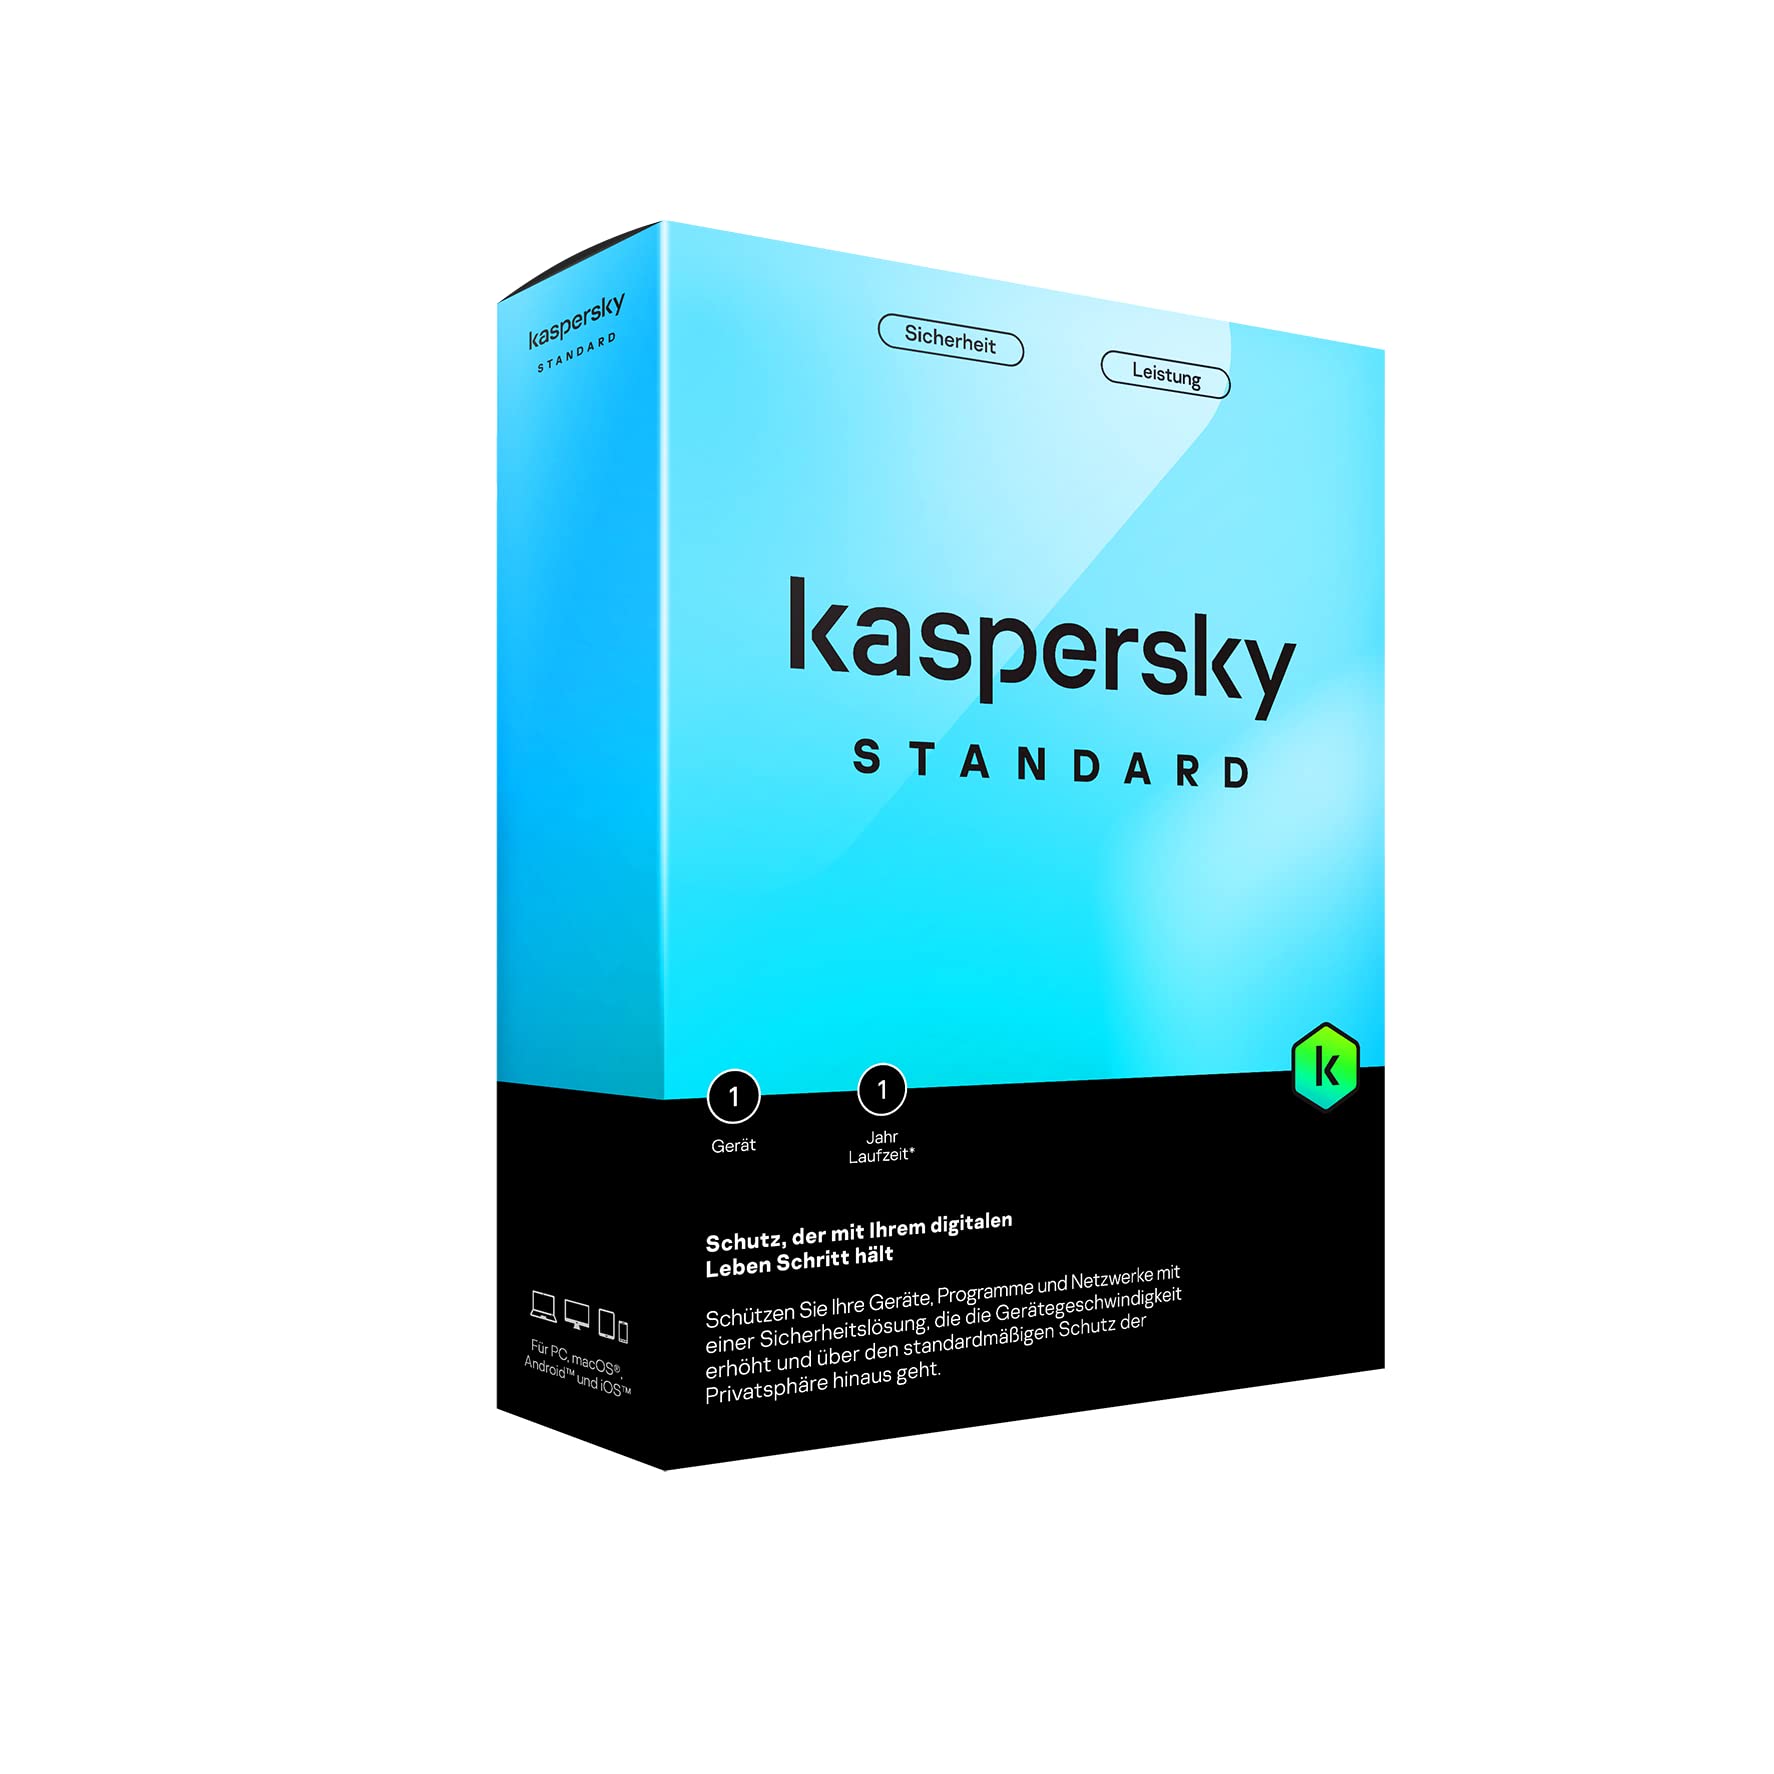 Kaspersky Standard 1 máy trong 1 năm - Hàng chính hãng